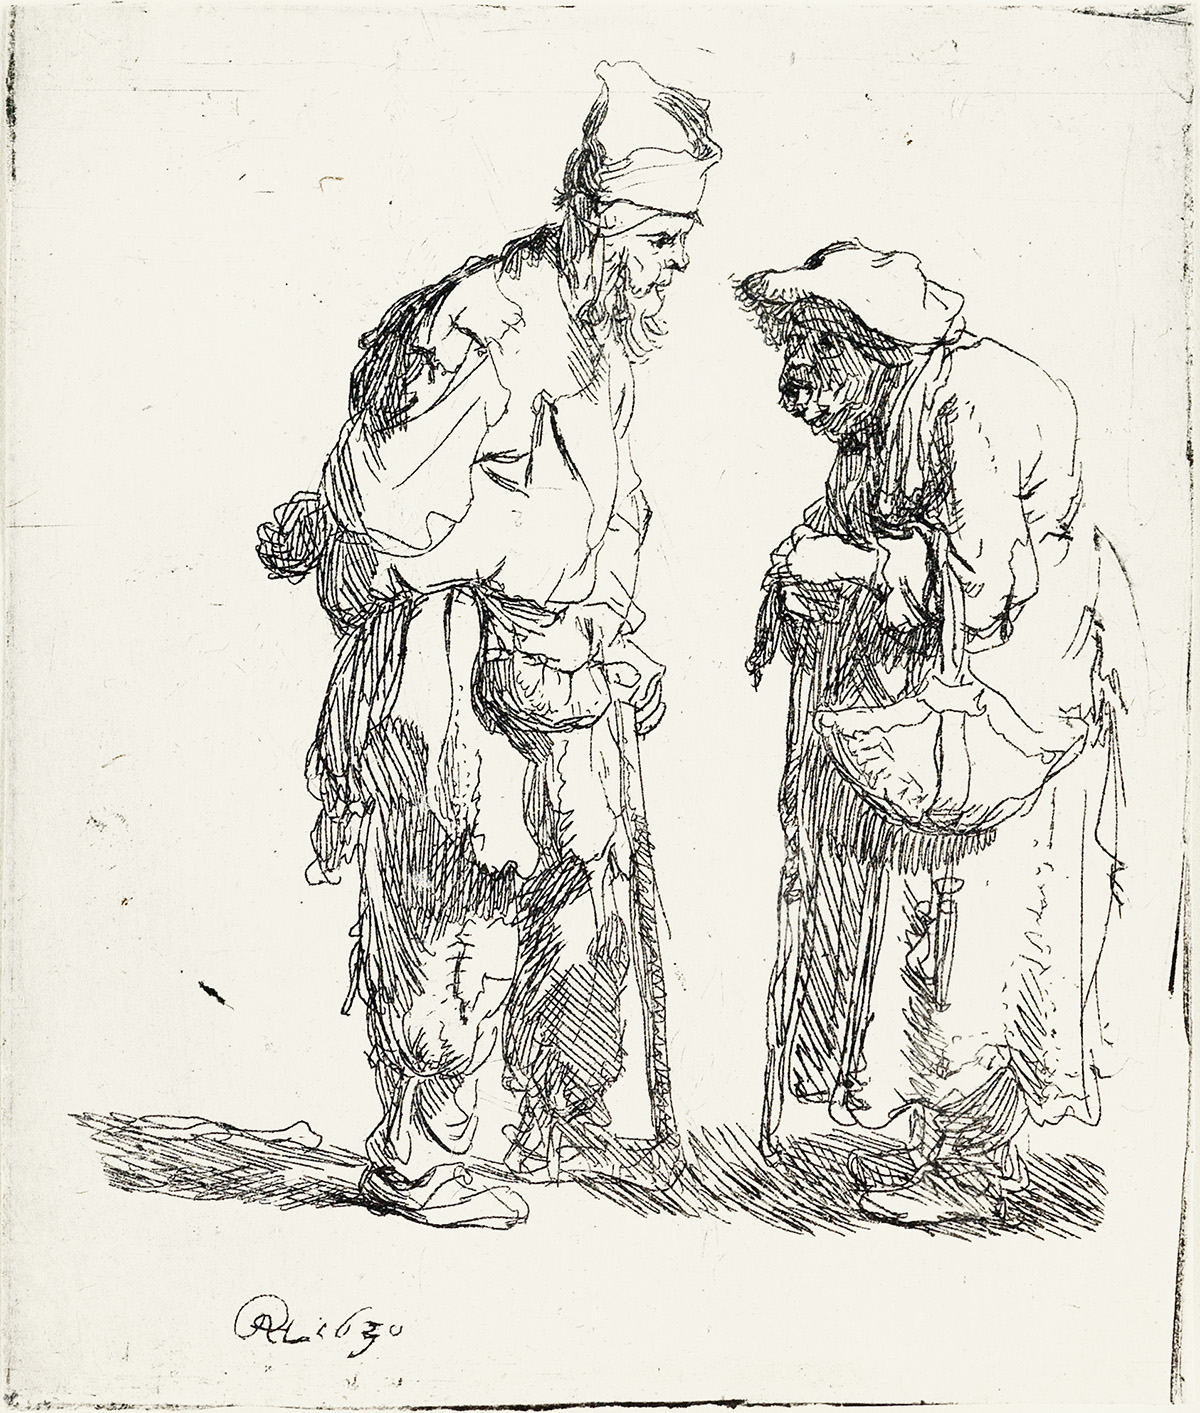 REMBRANDT VAN RIJN A Beggar Man and a Beggar Woman Conversing.